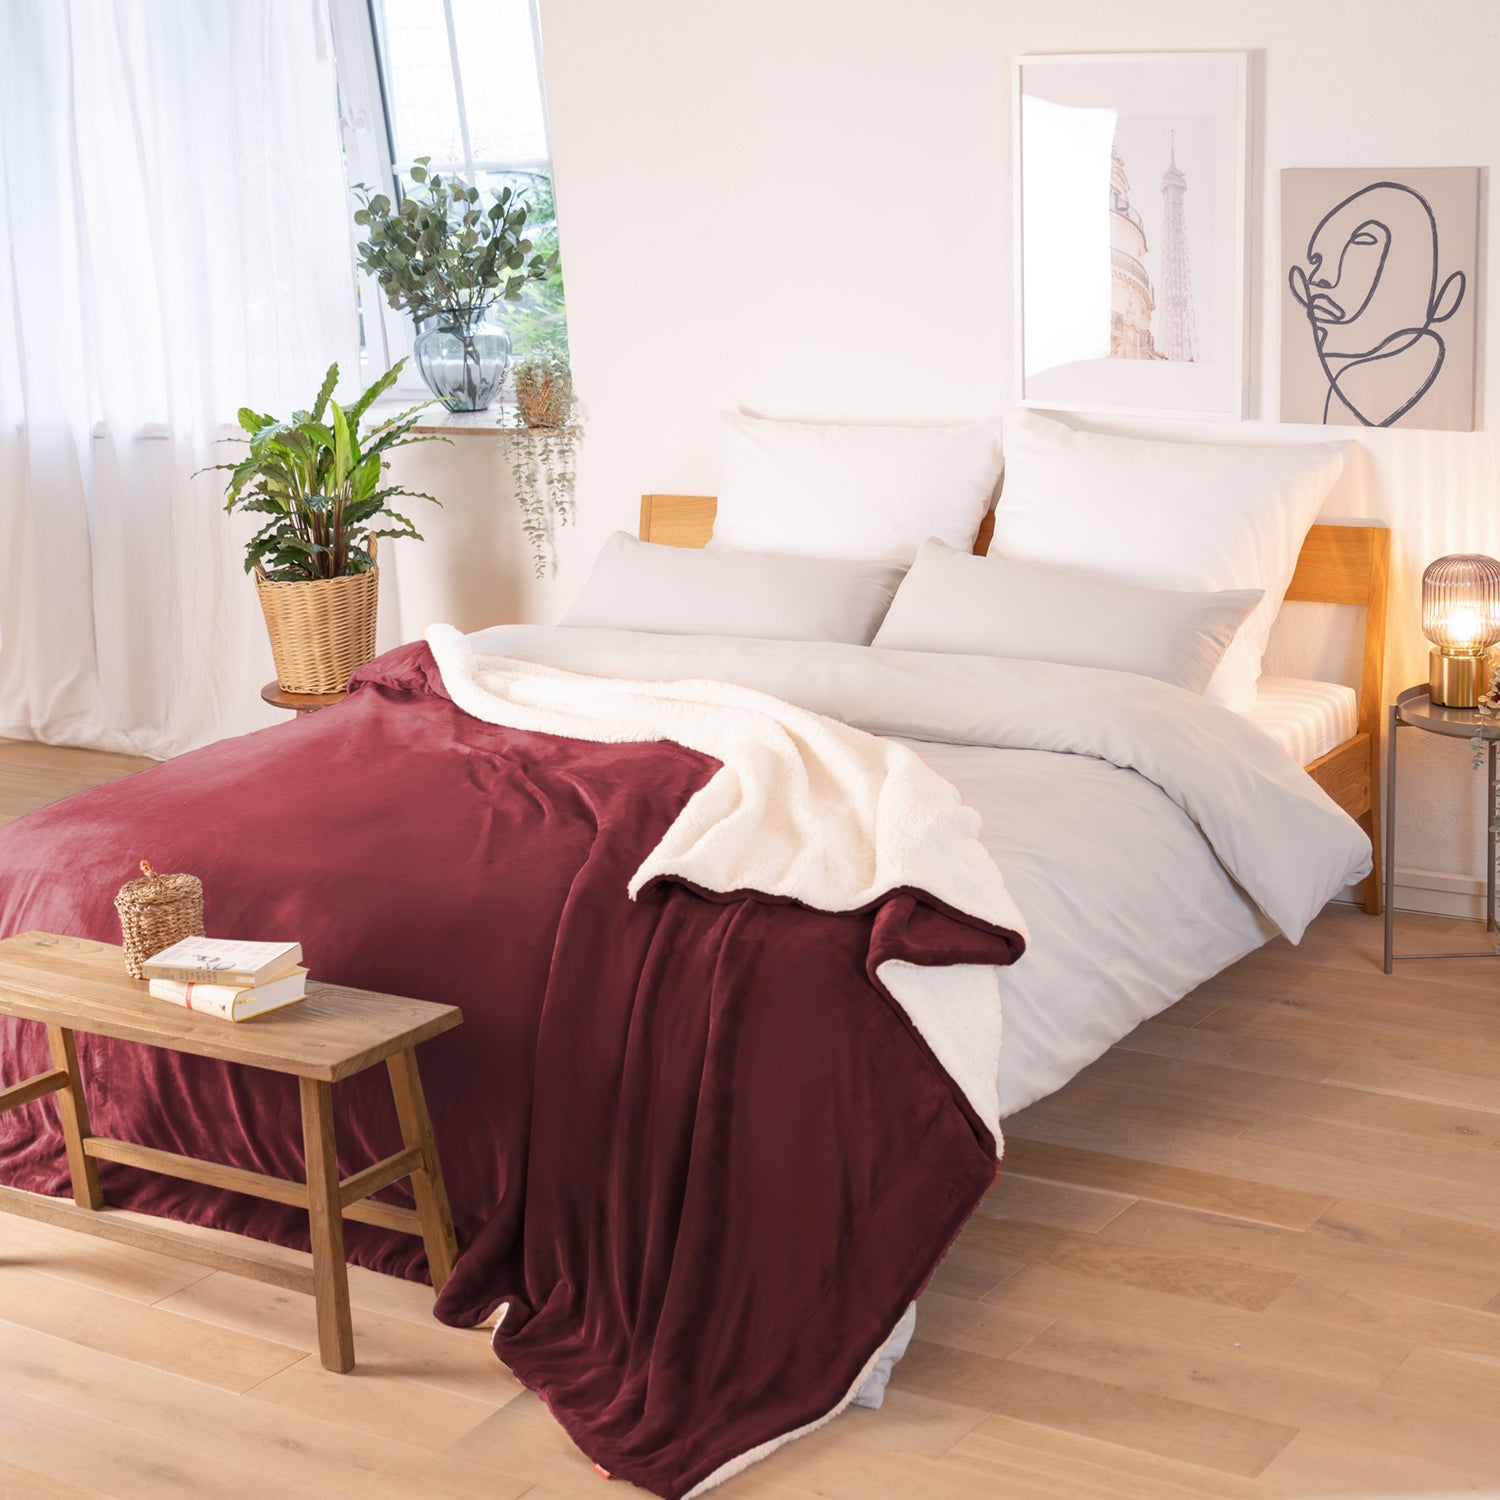 Rot-weinrote Decke mit weißer Fleece-Innenseite, ausgebreitet über ein Bett in einem Raum mit natürlicher Beleuchtung, Pflanzen und Bildern im Hintergrund.